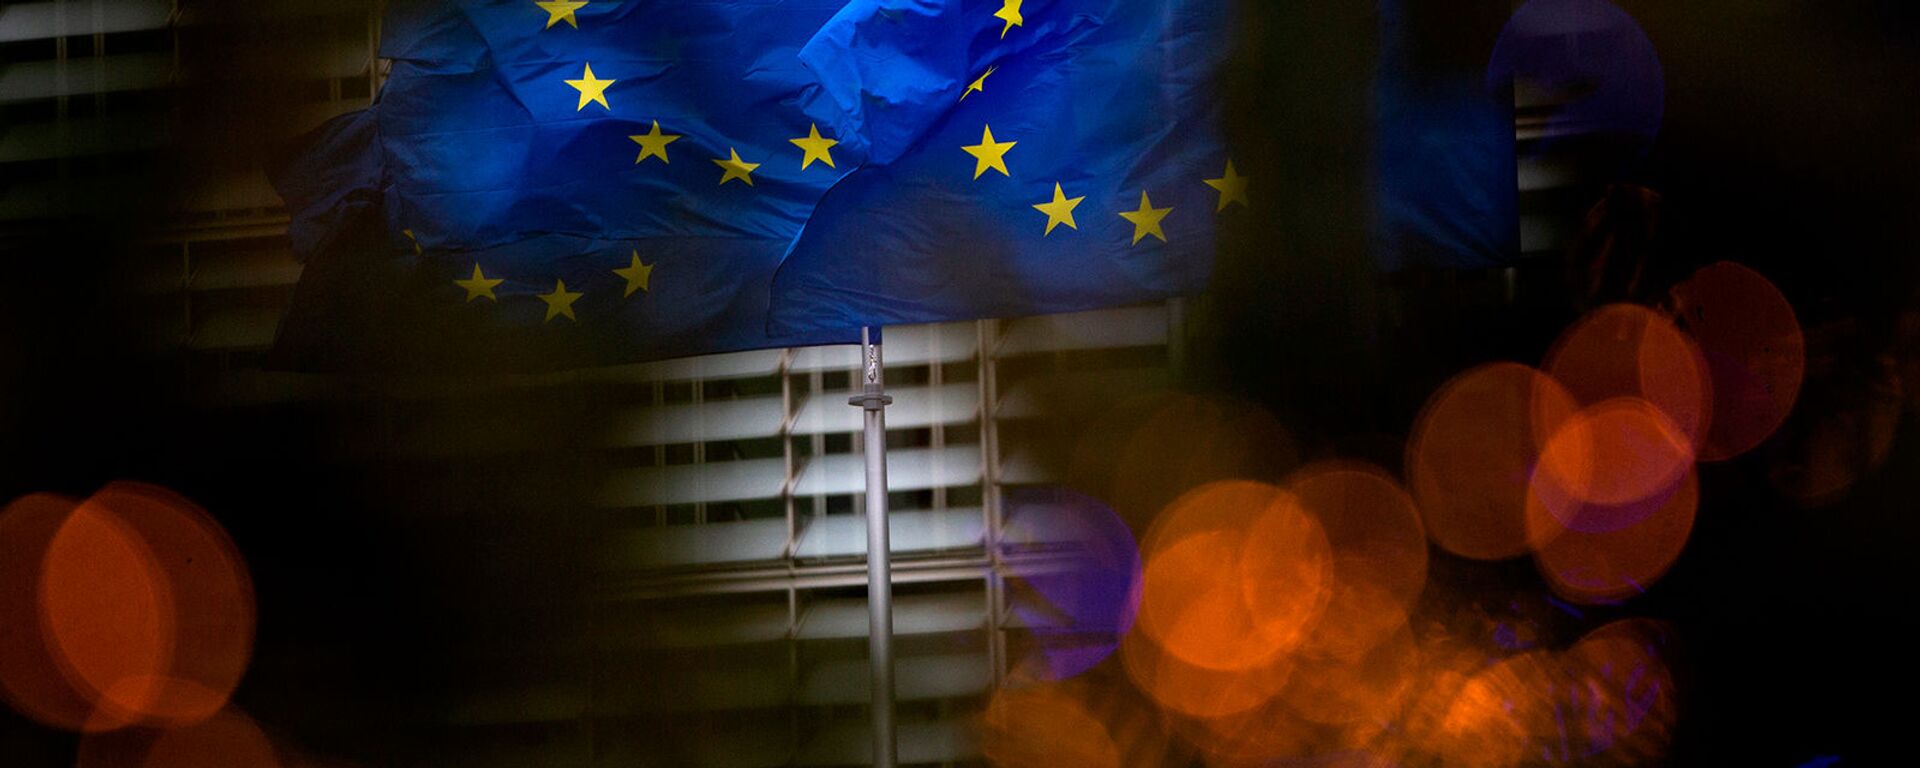 Флаги Европейского союза перед штаб-квартирой ЕС в Брюсселе - Sputnik Грузия, 1920, 15.02.2021